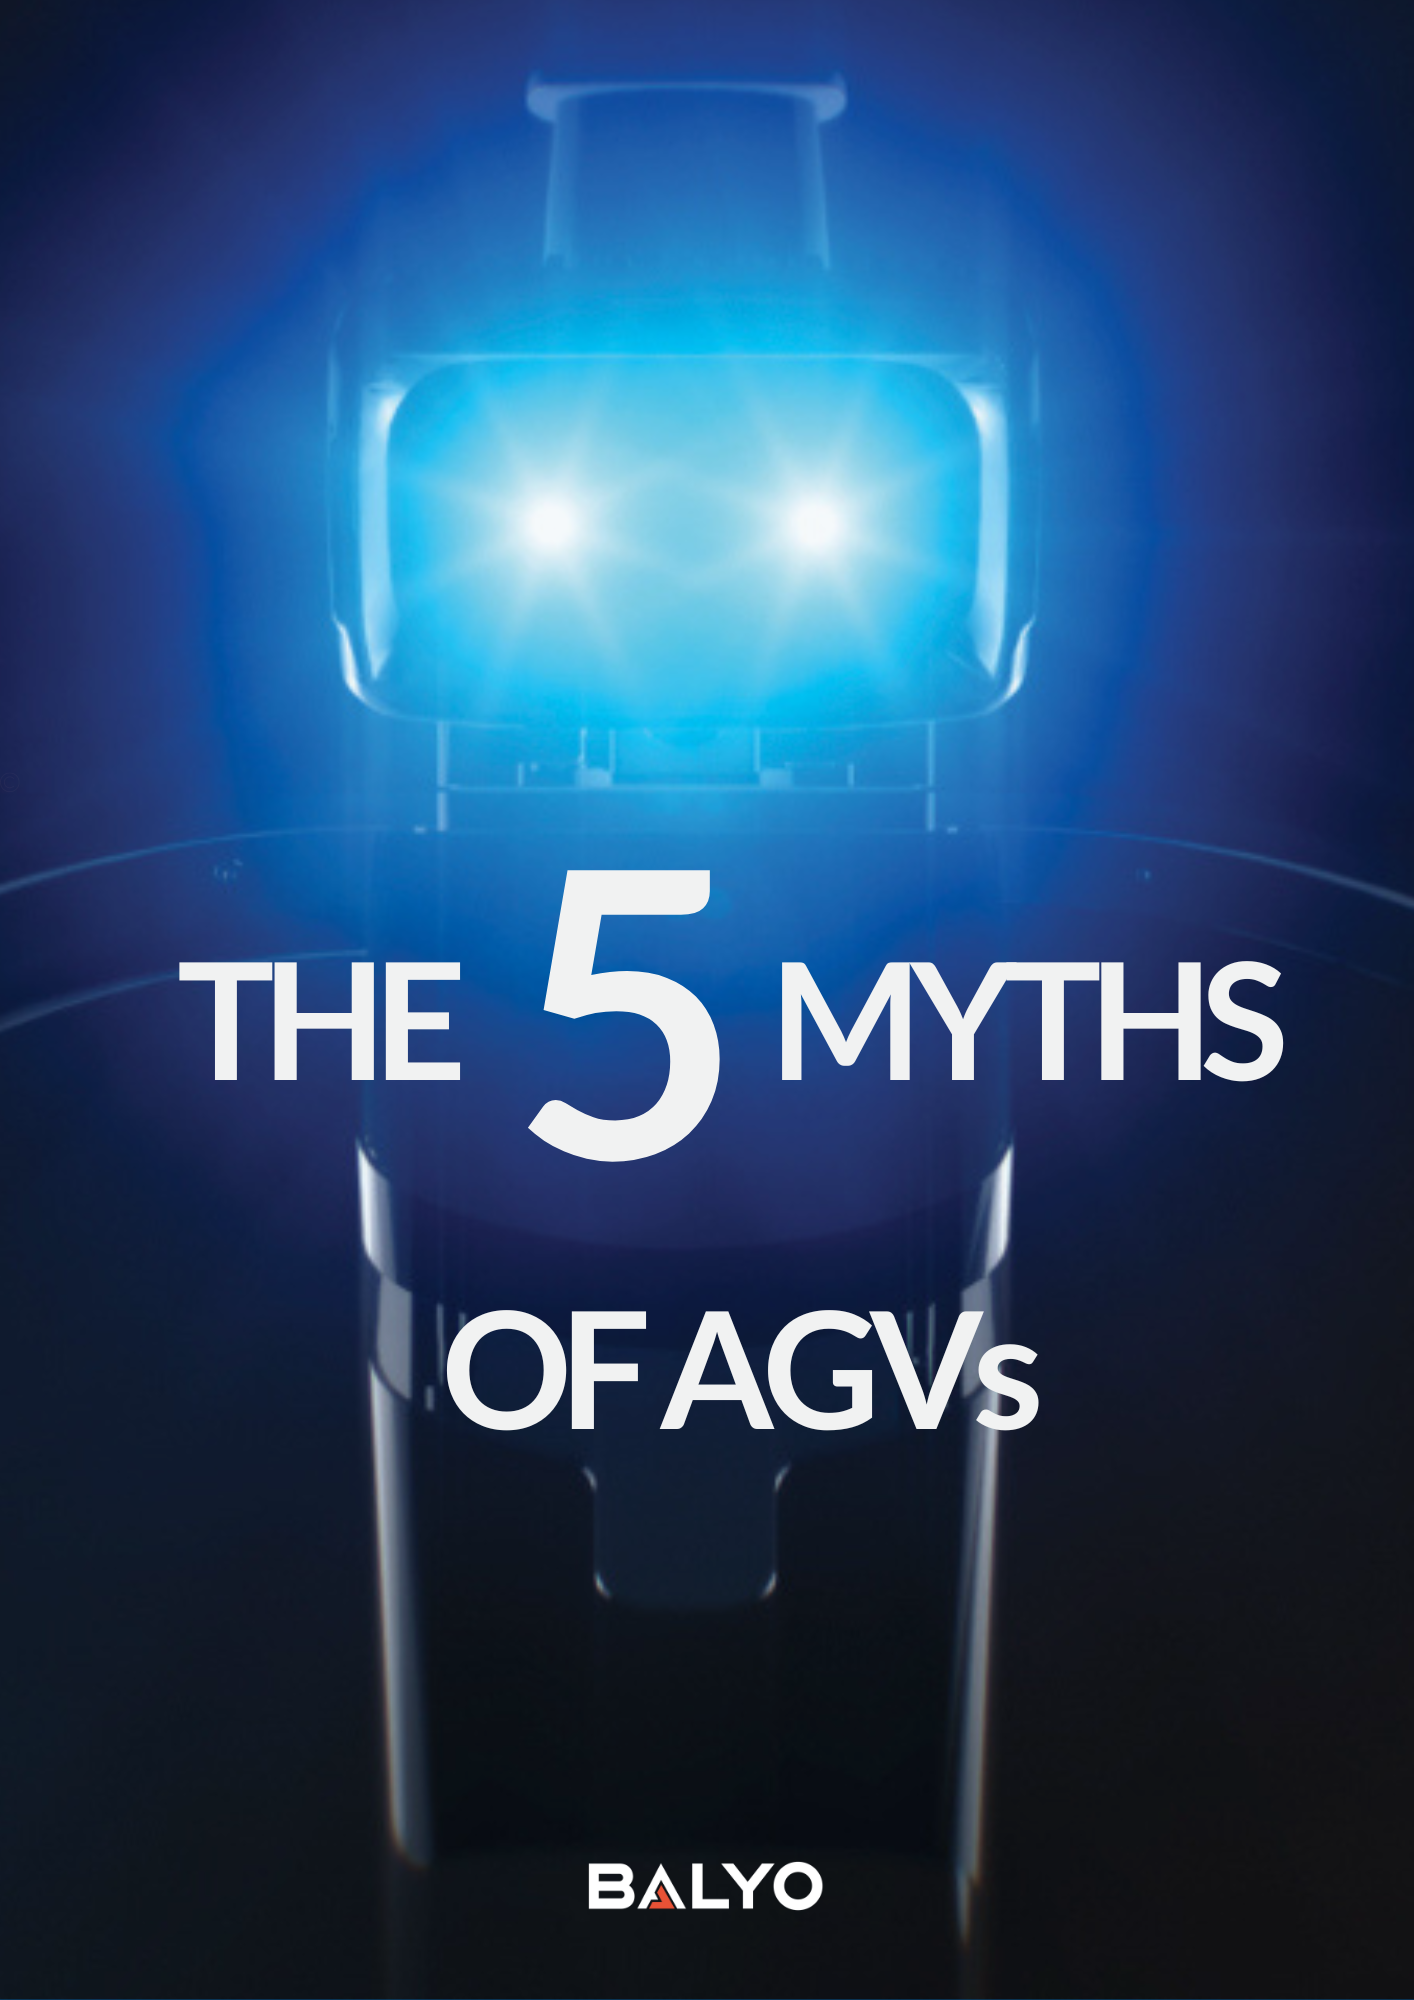 THE 5 MYTHS OF AGVs